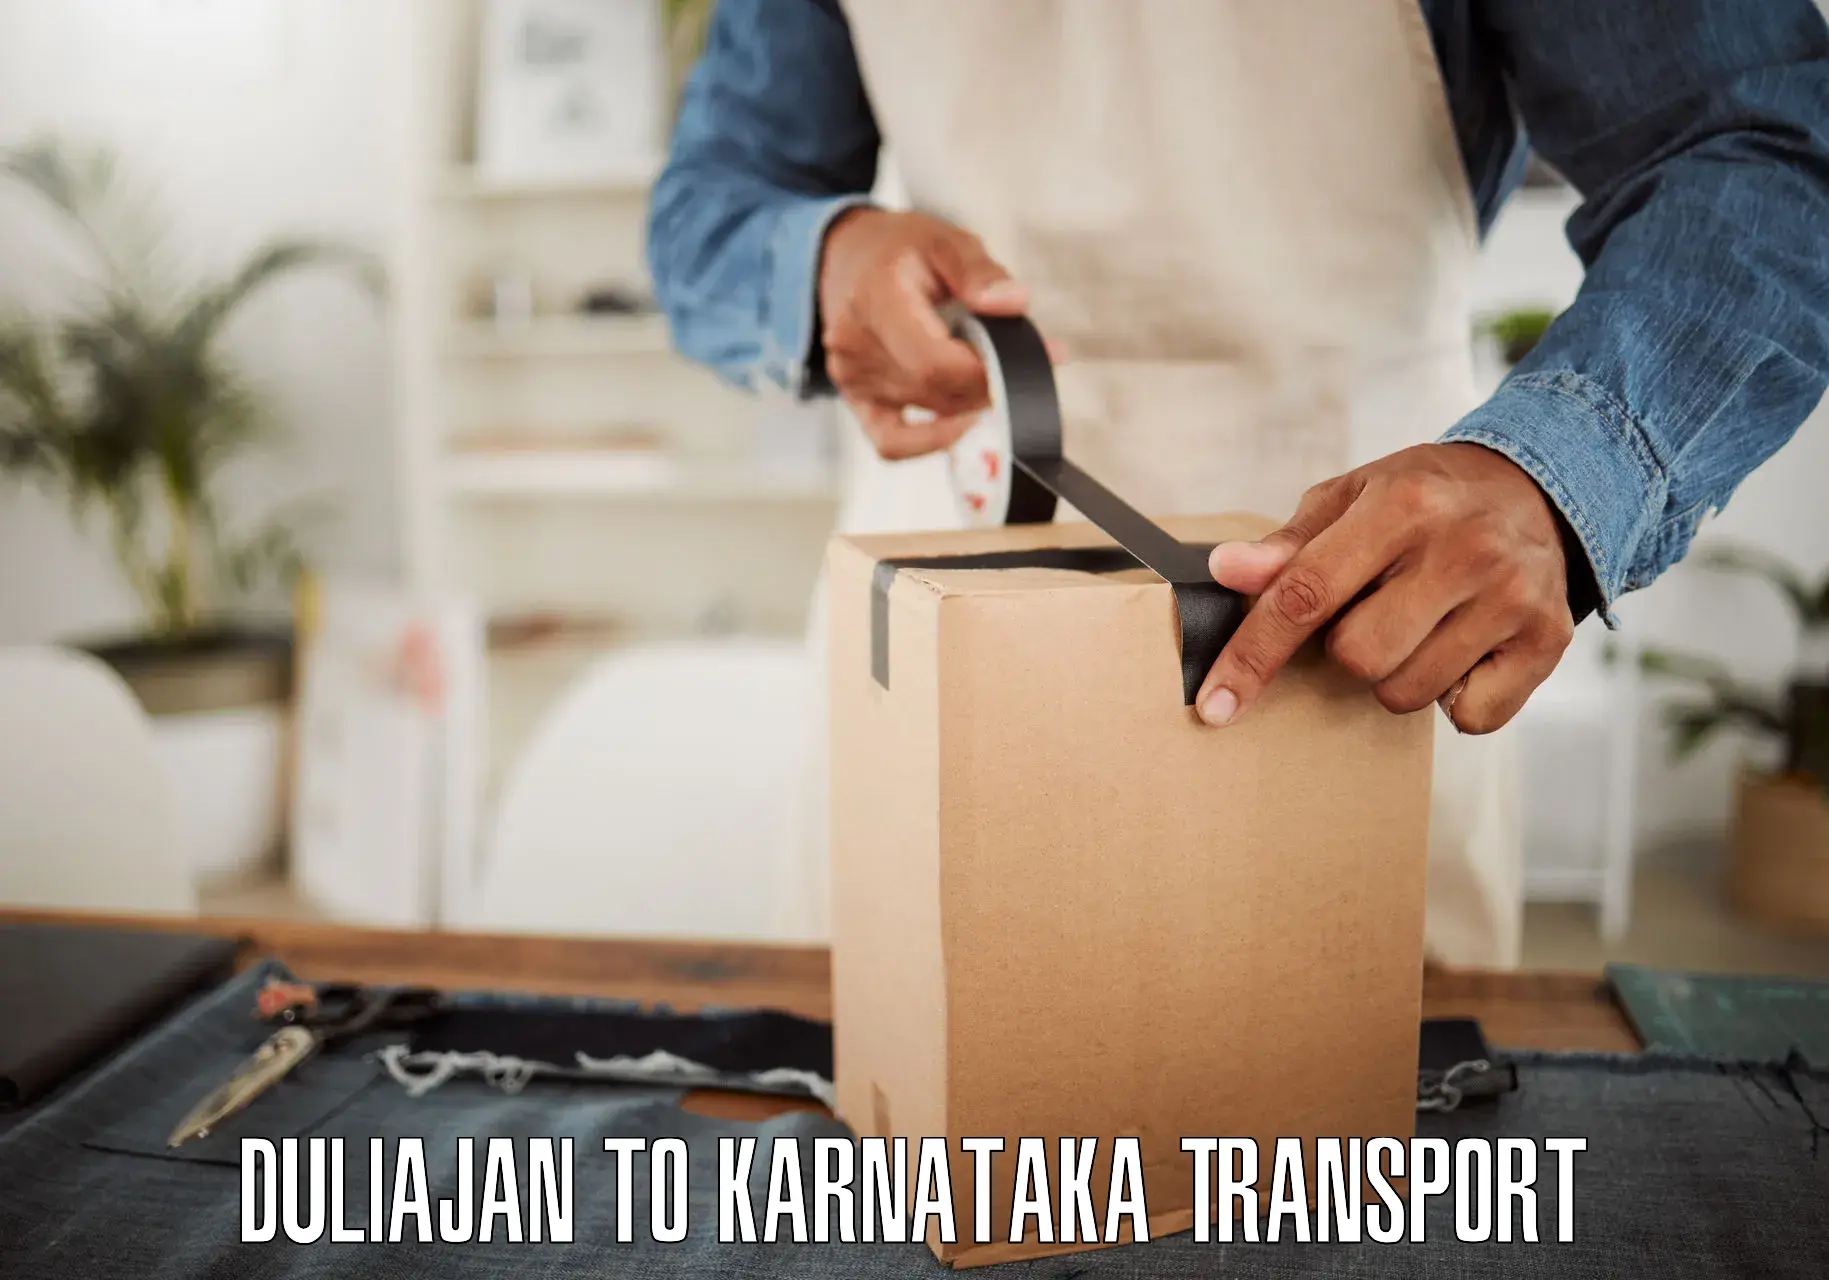 Online transport service Duliajan to Karnataka